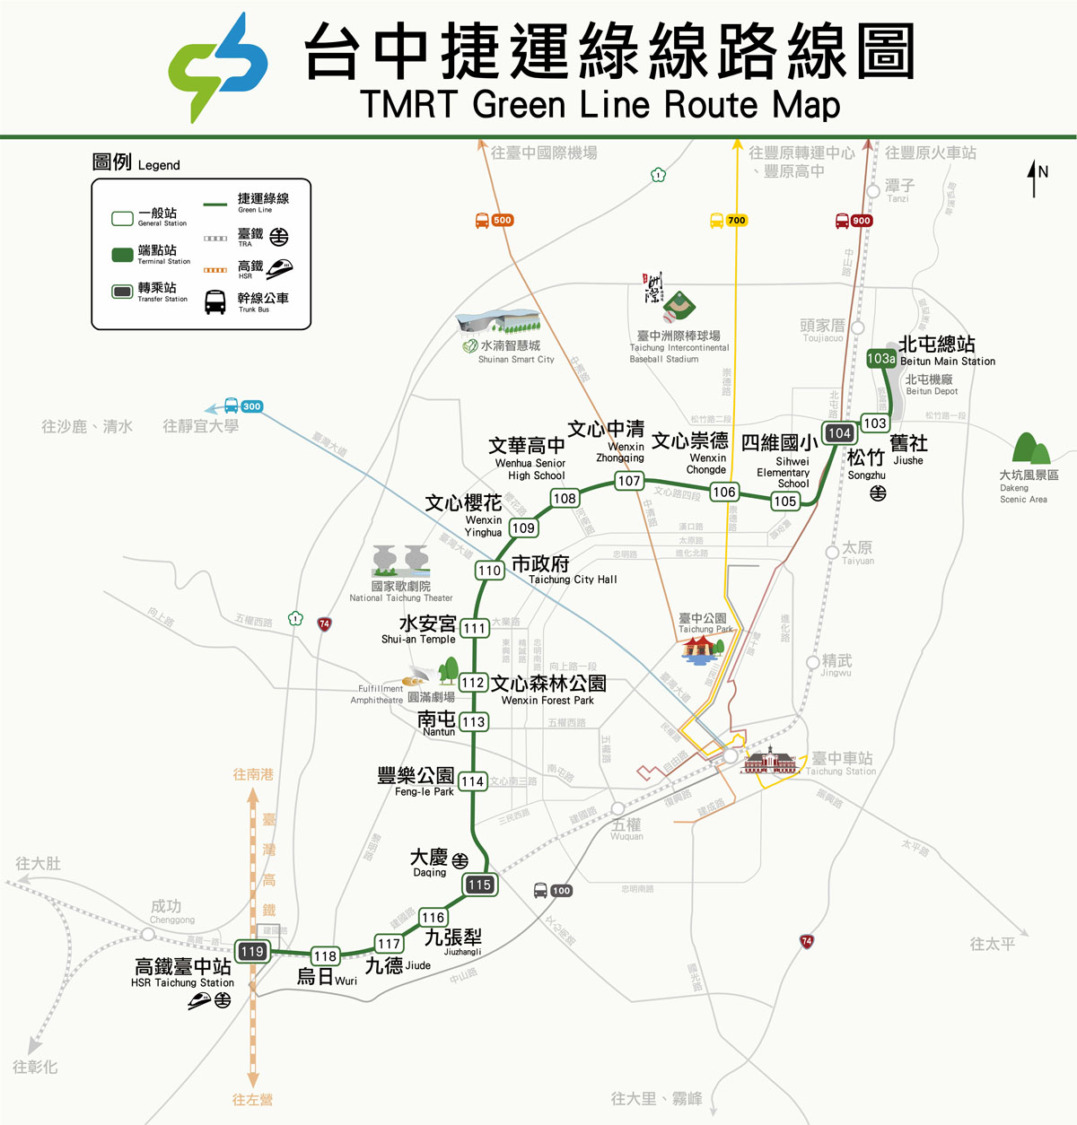 台中捷運藍線規劃提報審查  創造中央地方民眾三贏局面